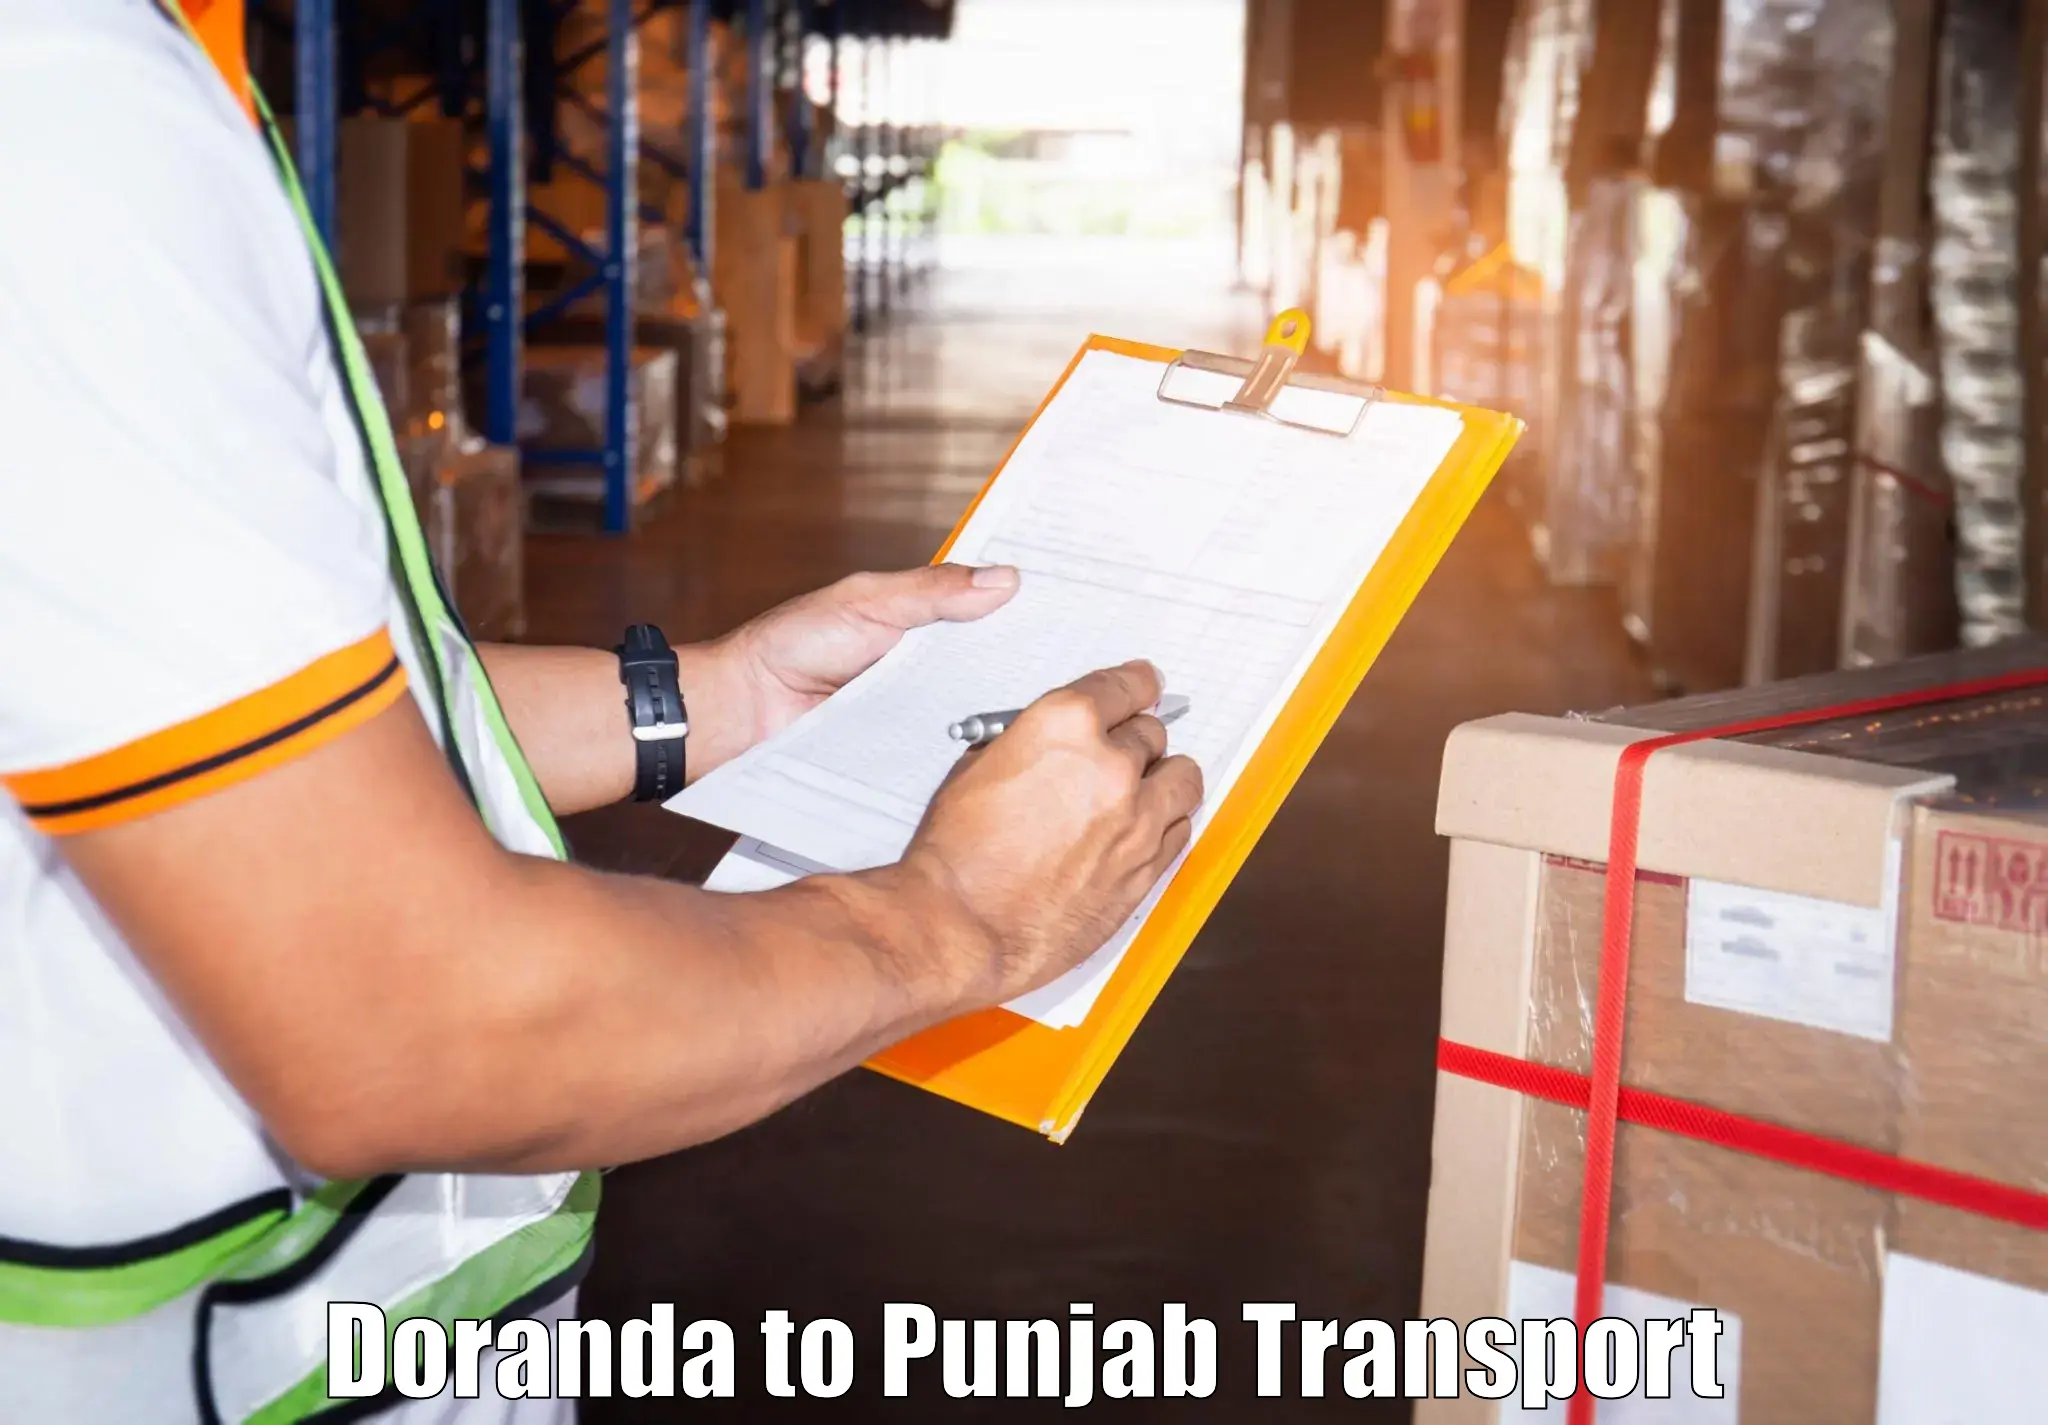 Cargo train transport services Doranda to Sangrur